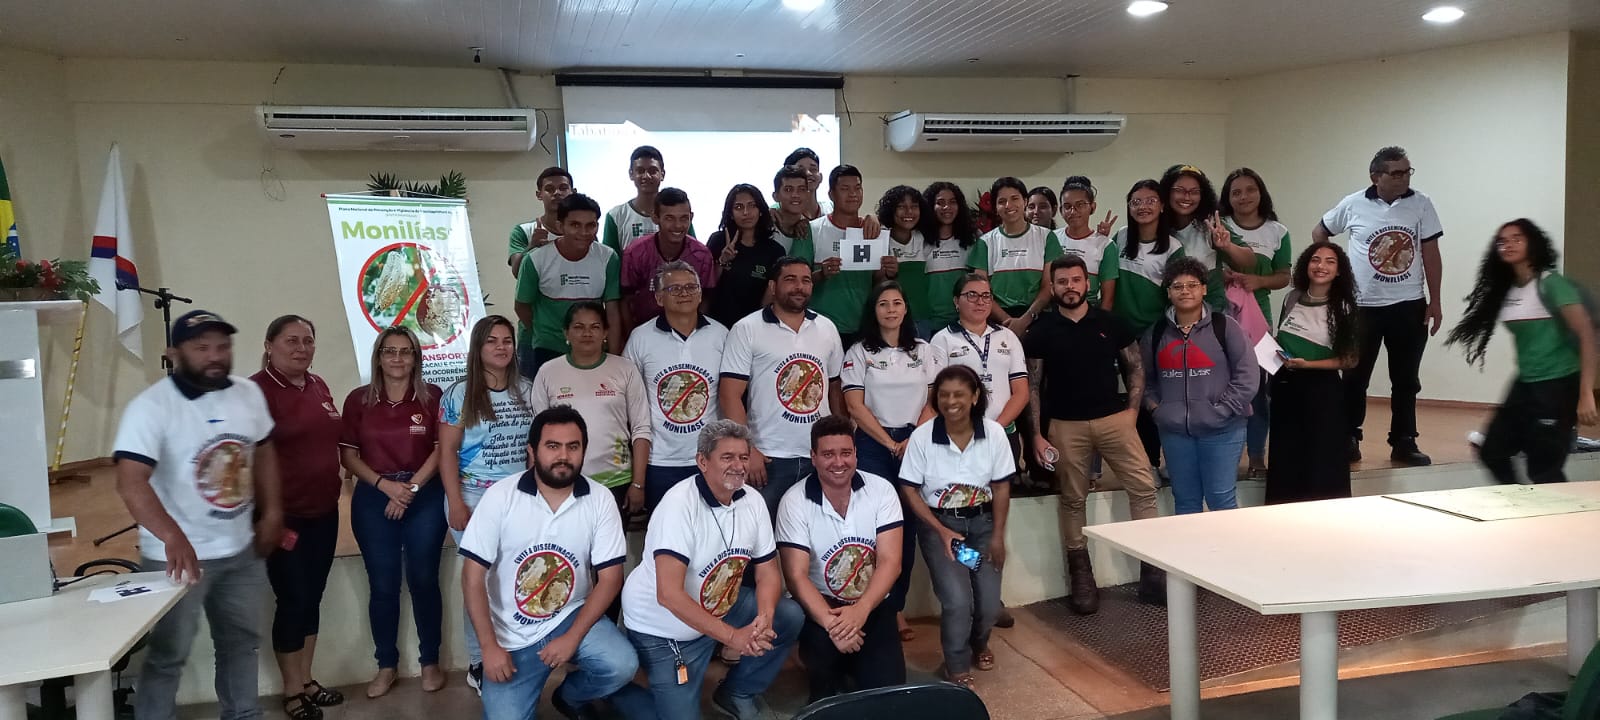 Caravana da Monilíase sensibiliza mais de 300 pessoas em Presidente Figueiredo